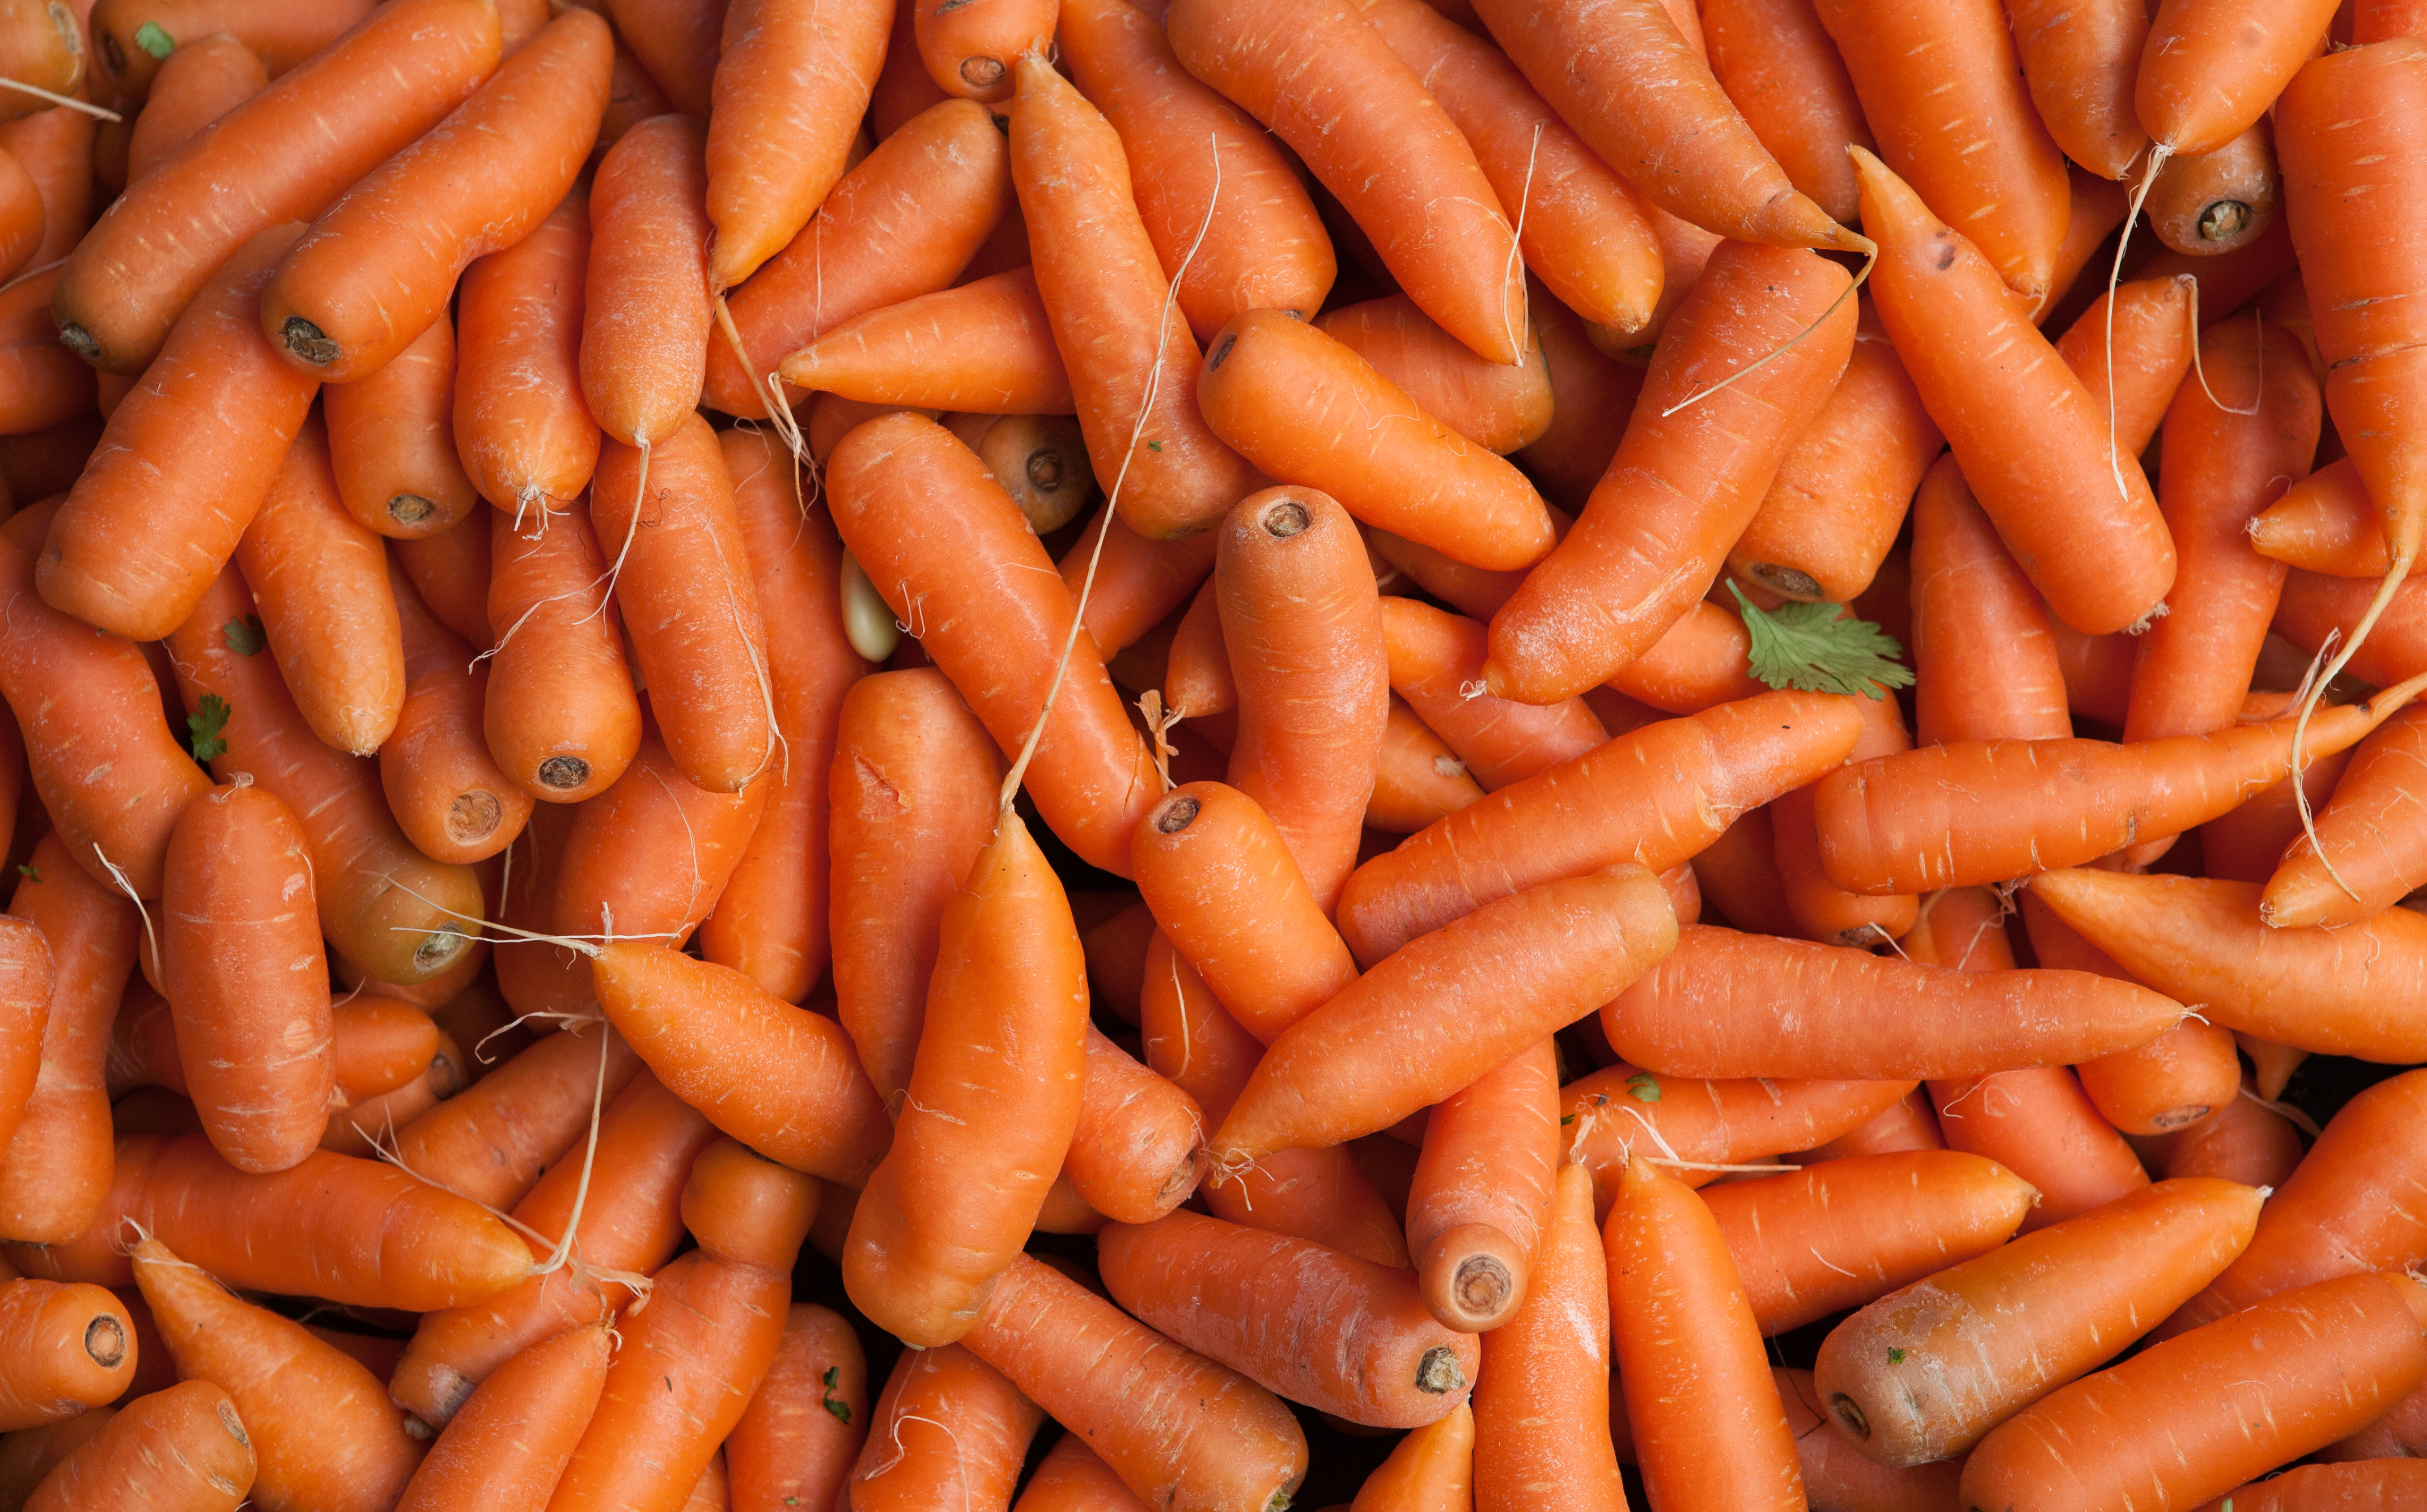 Many orange carrots